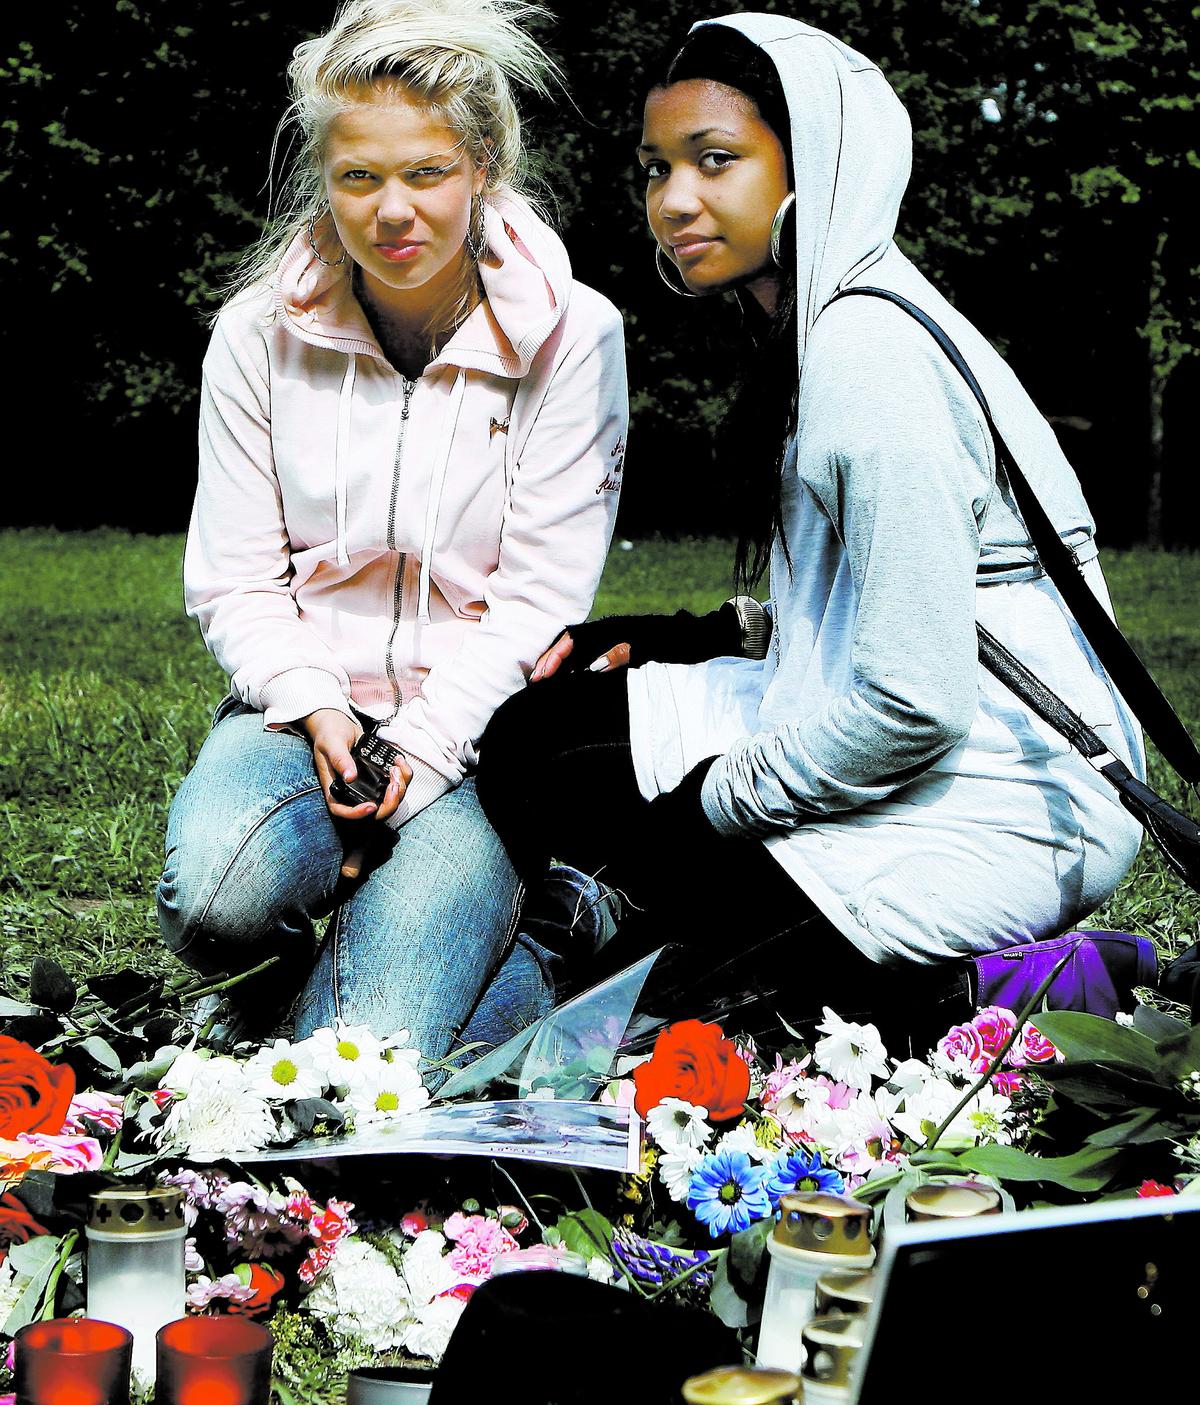 Sofia Forsberg, 16, och Anna Kårling Khan, 15, vänner till den mördade 15-åringen, sitter vid minnesplatsen i Stureby. Här bland mängder av brev och blommor försöker vännerna förstå vad som hänt. ”Hon förtjänade inte det här”, säger Sofia. ’Det är så hemskt’